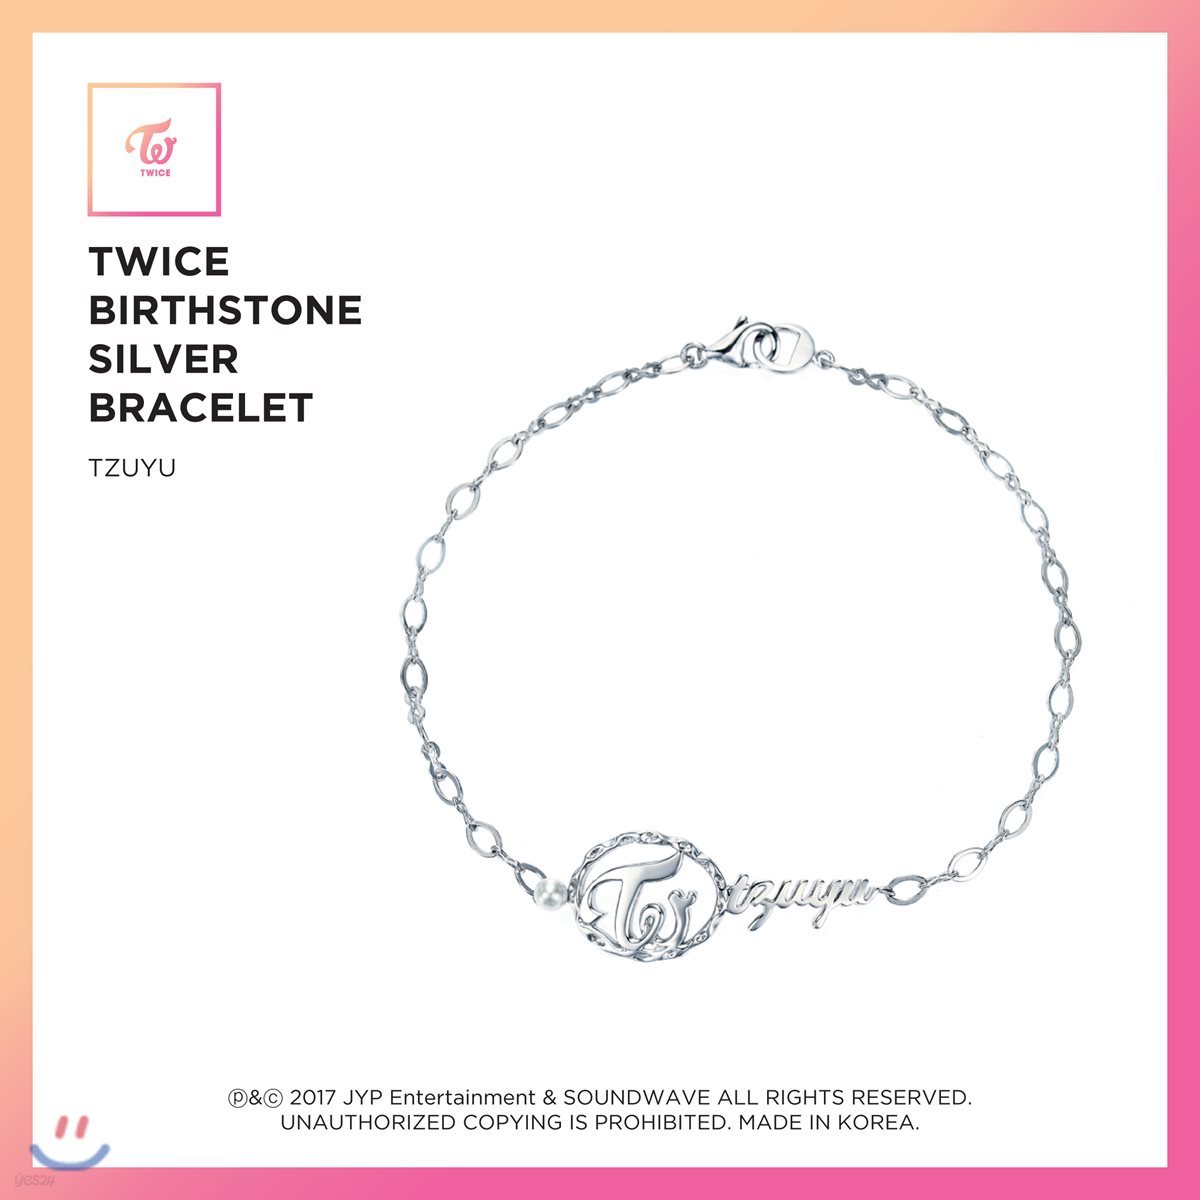 트와이스 (TWICE) - TWICE Birthstone Silver Bracelet [Tzuyu]